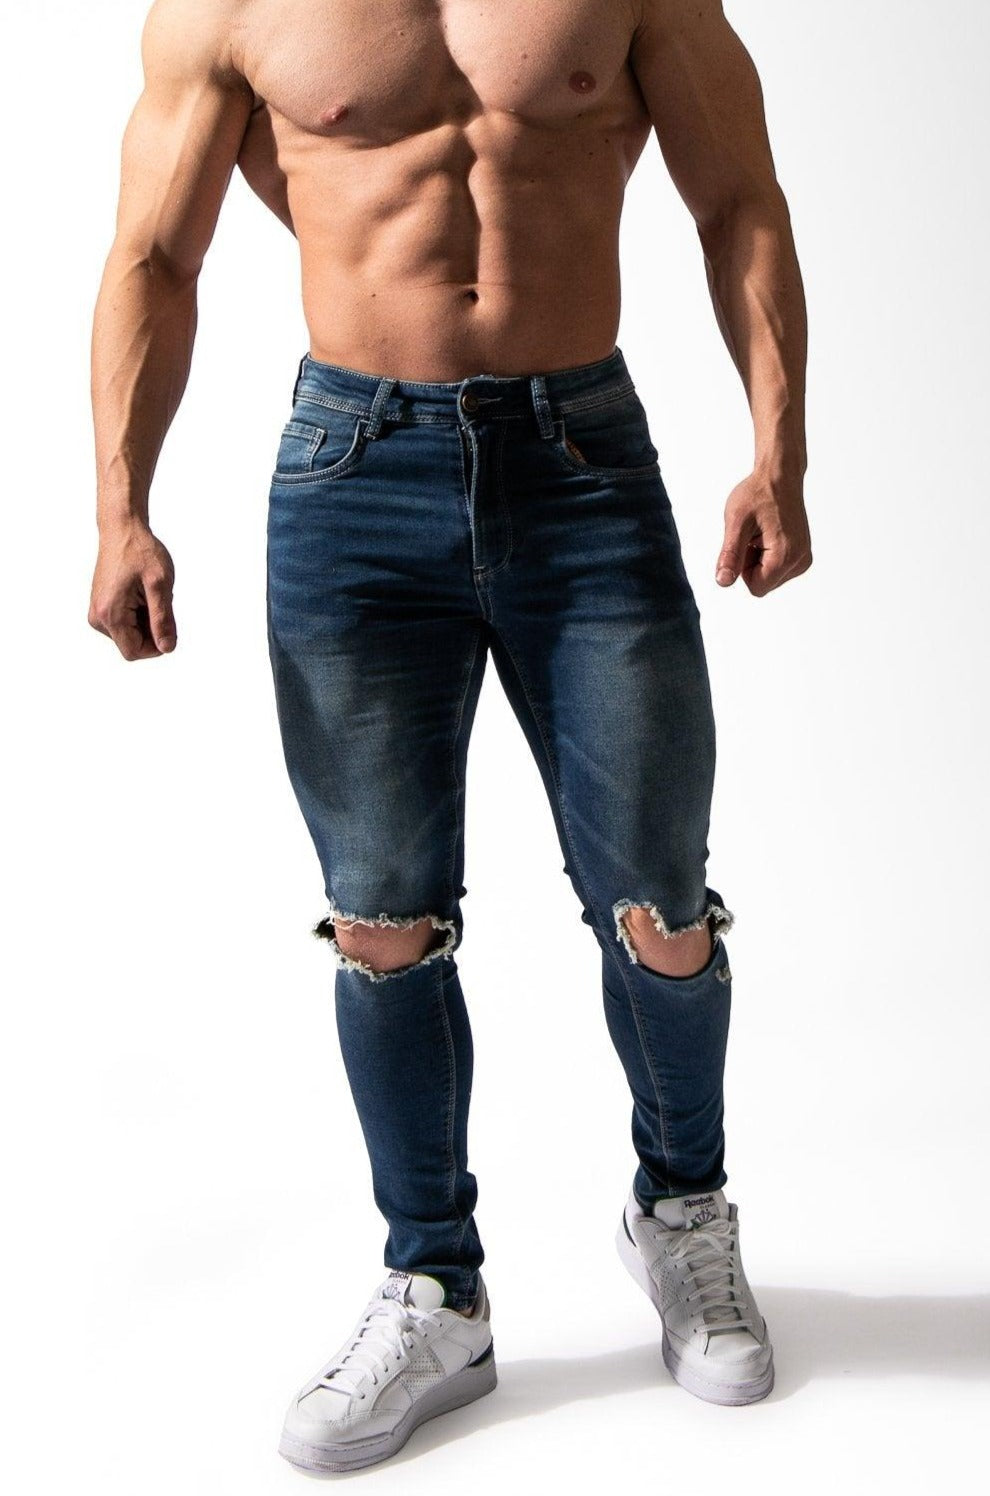 knoglebrud amerikansk dollar Underlegen Denim Jeans for Men | Bodybuilding Fitness & Casual Wear | Jed North